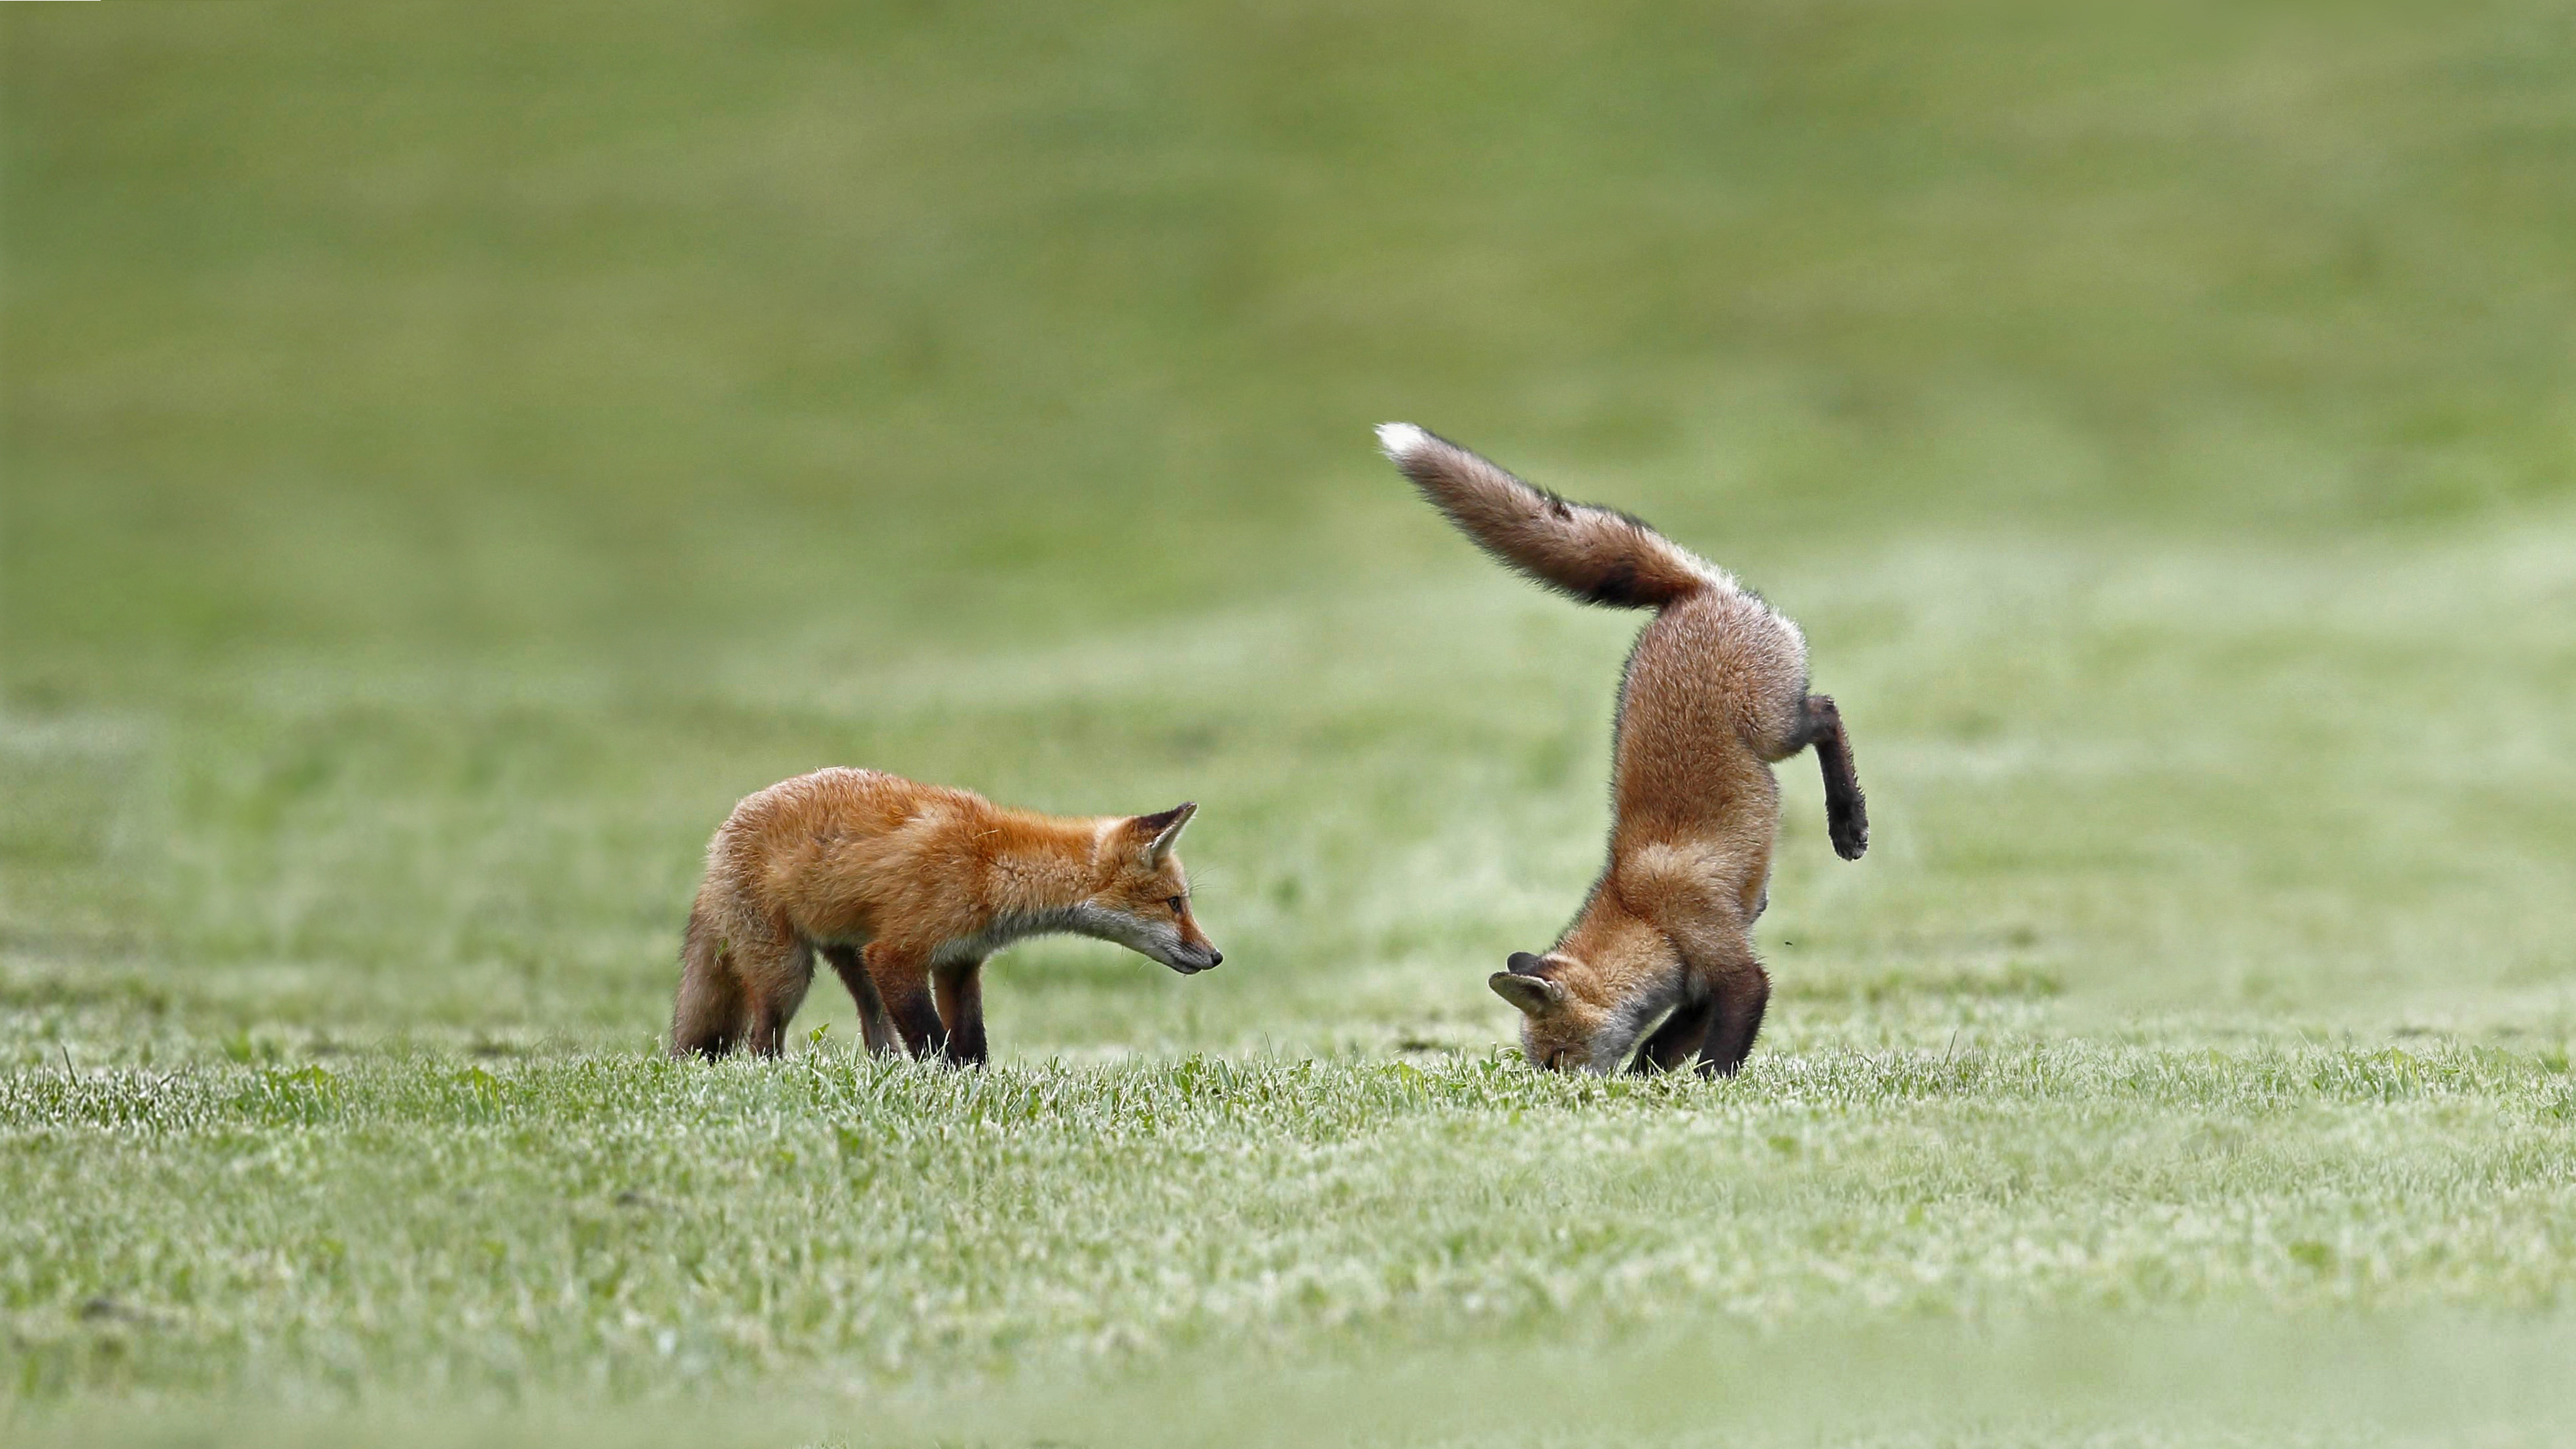 狩りの練習をする子ギツネ カナダ ケベック州 Bing日替わり画像